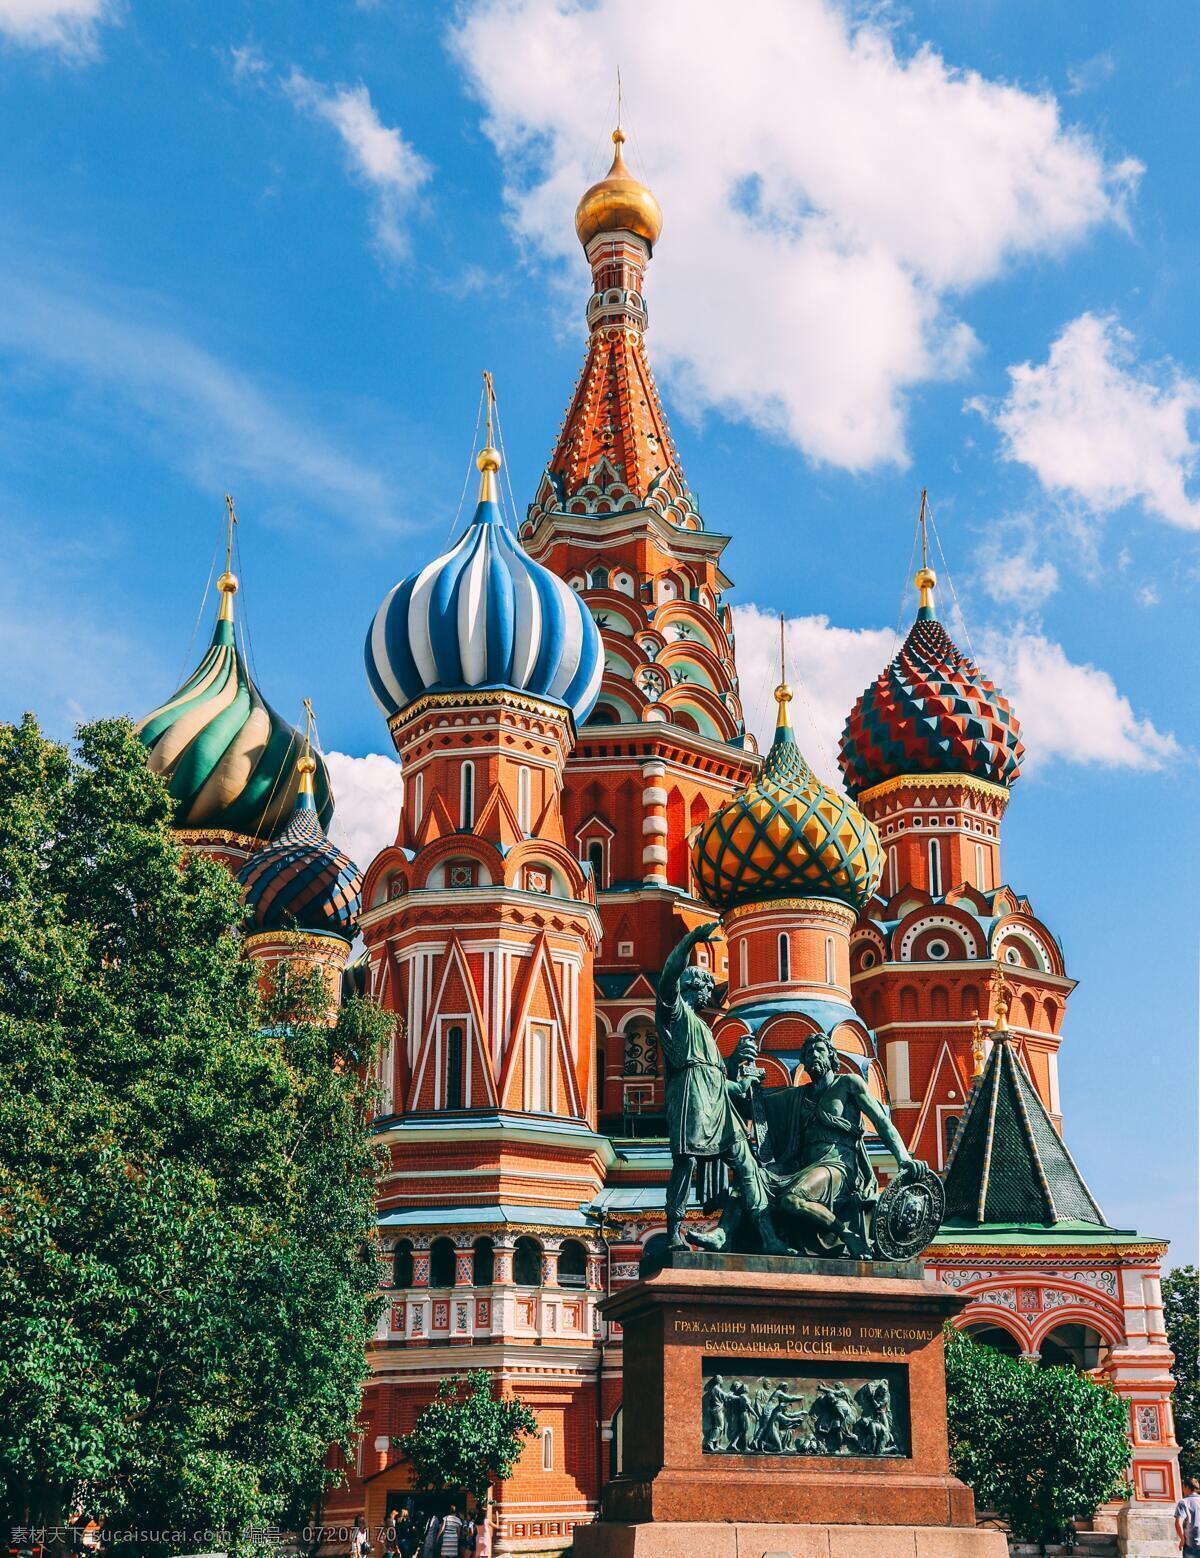 俄罗斯建筑 俄罗斯 特色 建筑 冰淇淋 彩色 五彩 民族 战斗民族 旅游摄影 人文景观